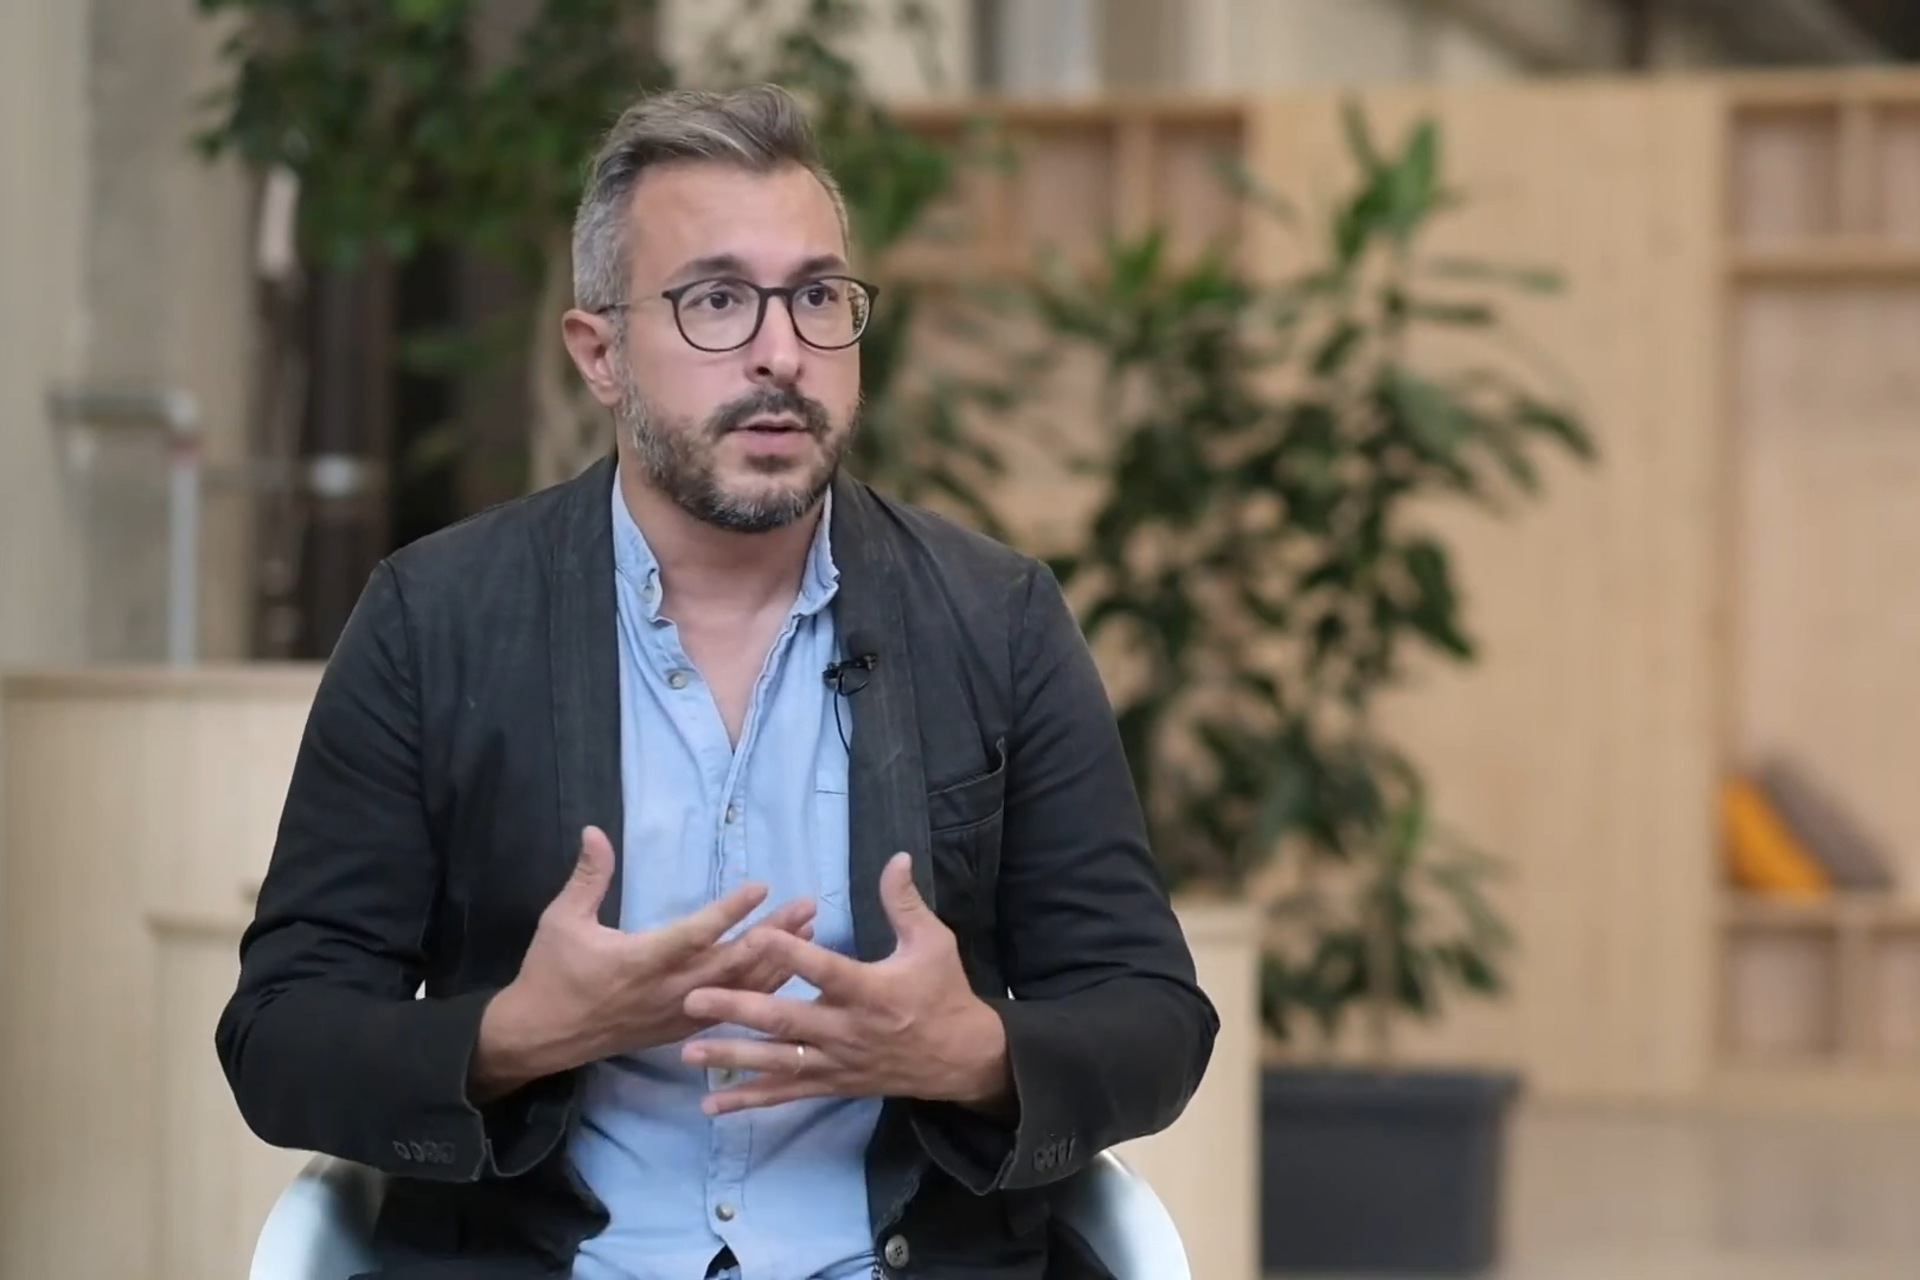 Davide Lugli: предприемачът Davide Lugli е собственик и главен изпълнителен директор на компанията Skipper в Кампания, както и създател на приложението Nebula